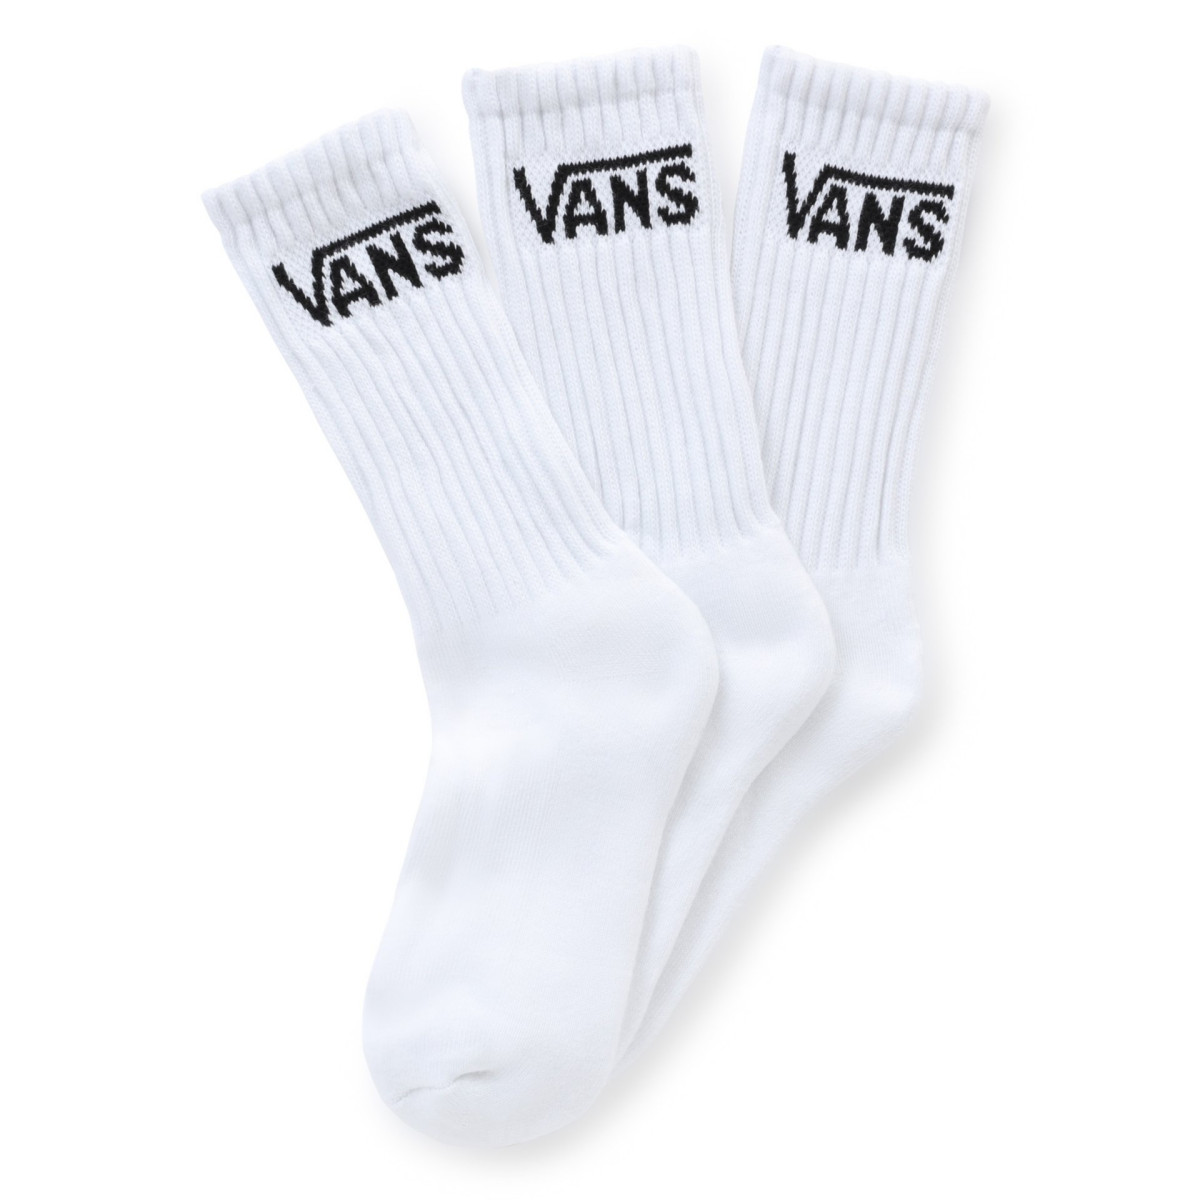 Vans sock pack white 3pc